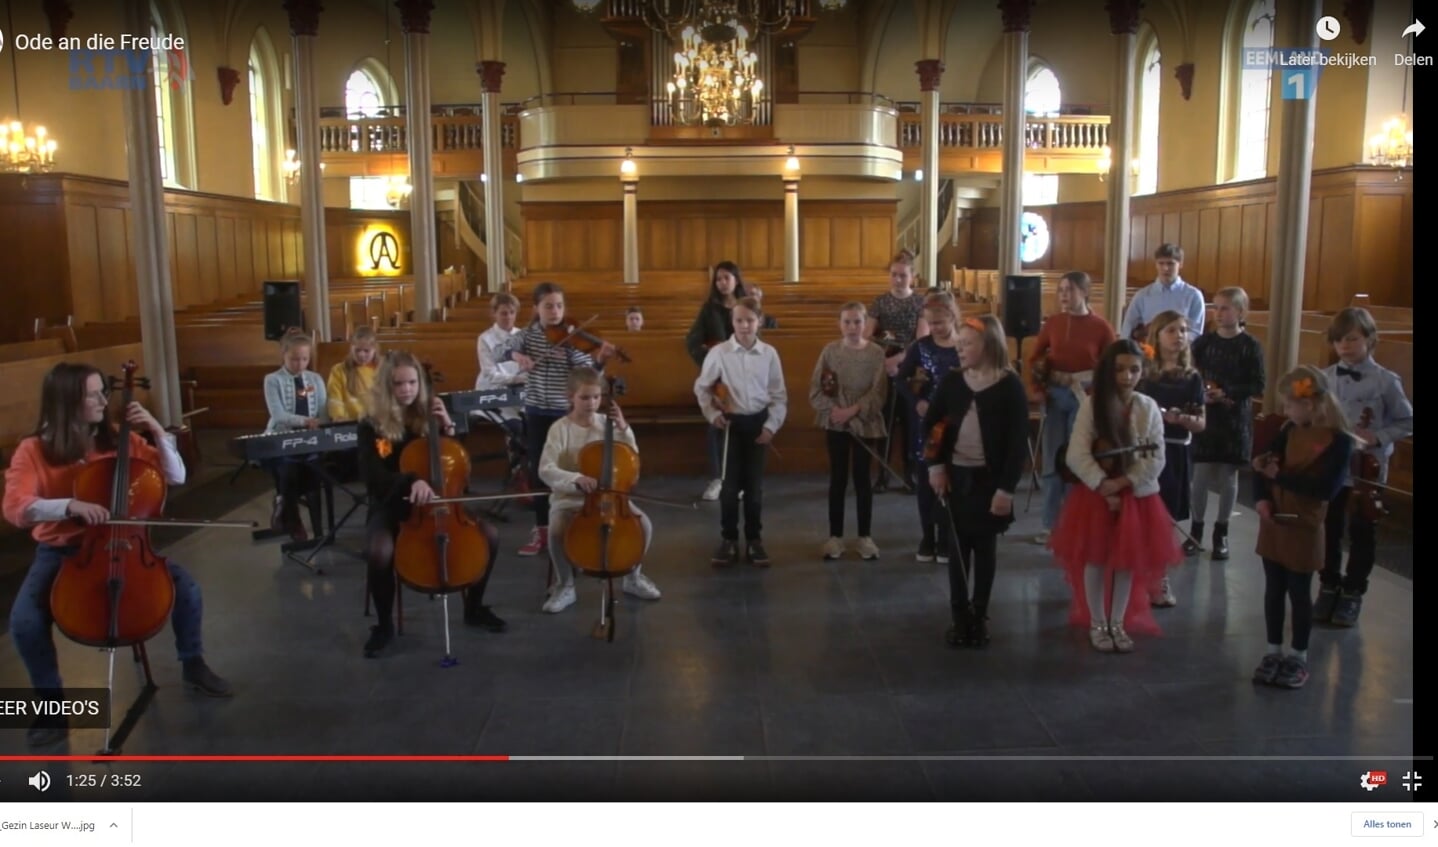 Ode an die Freude door leerlingen van de Muziekschool Baarn Soest. 